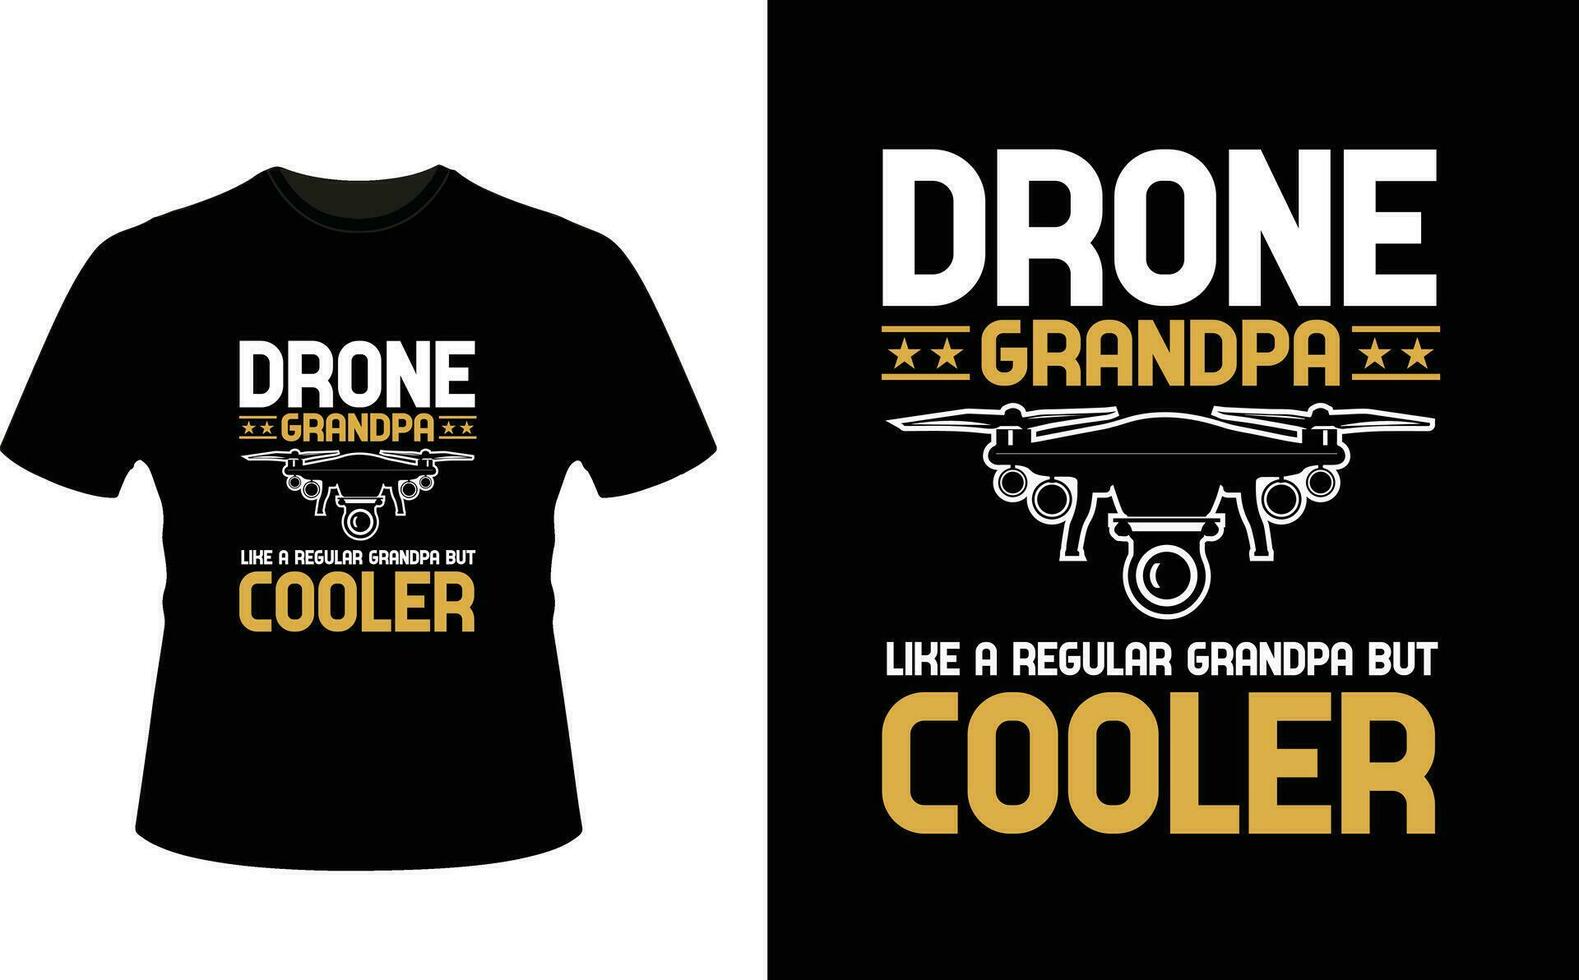 drone grand-père comme une ordinaire grand-père mais glacière ou grand-père T-shirt conception ou grand-père journée t chemise conception vecteur